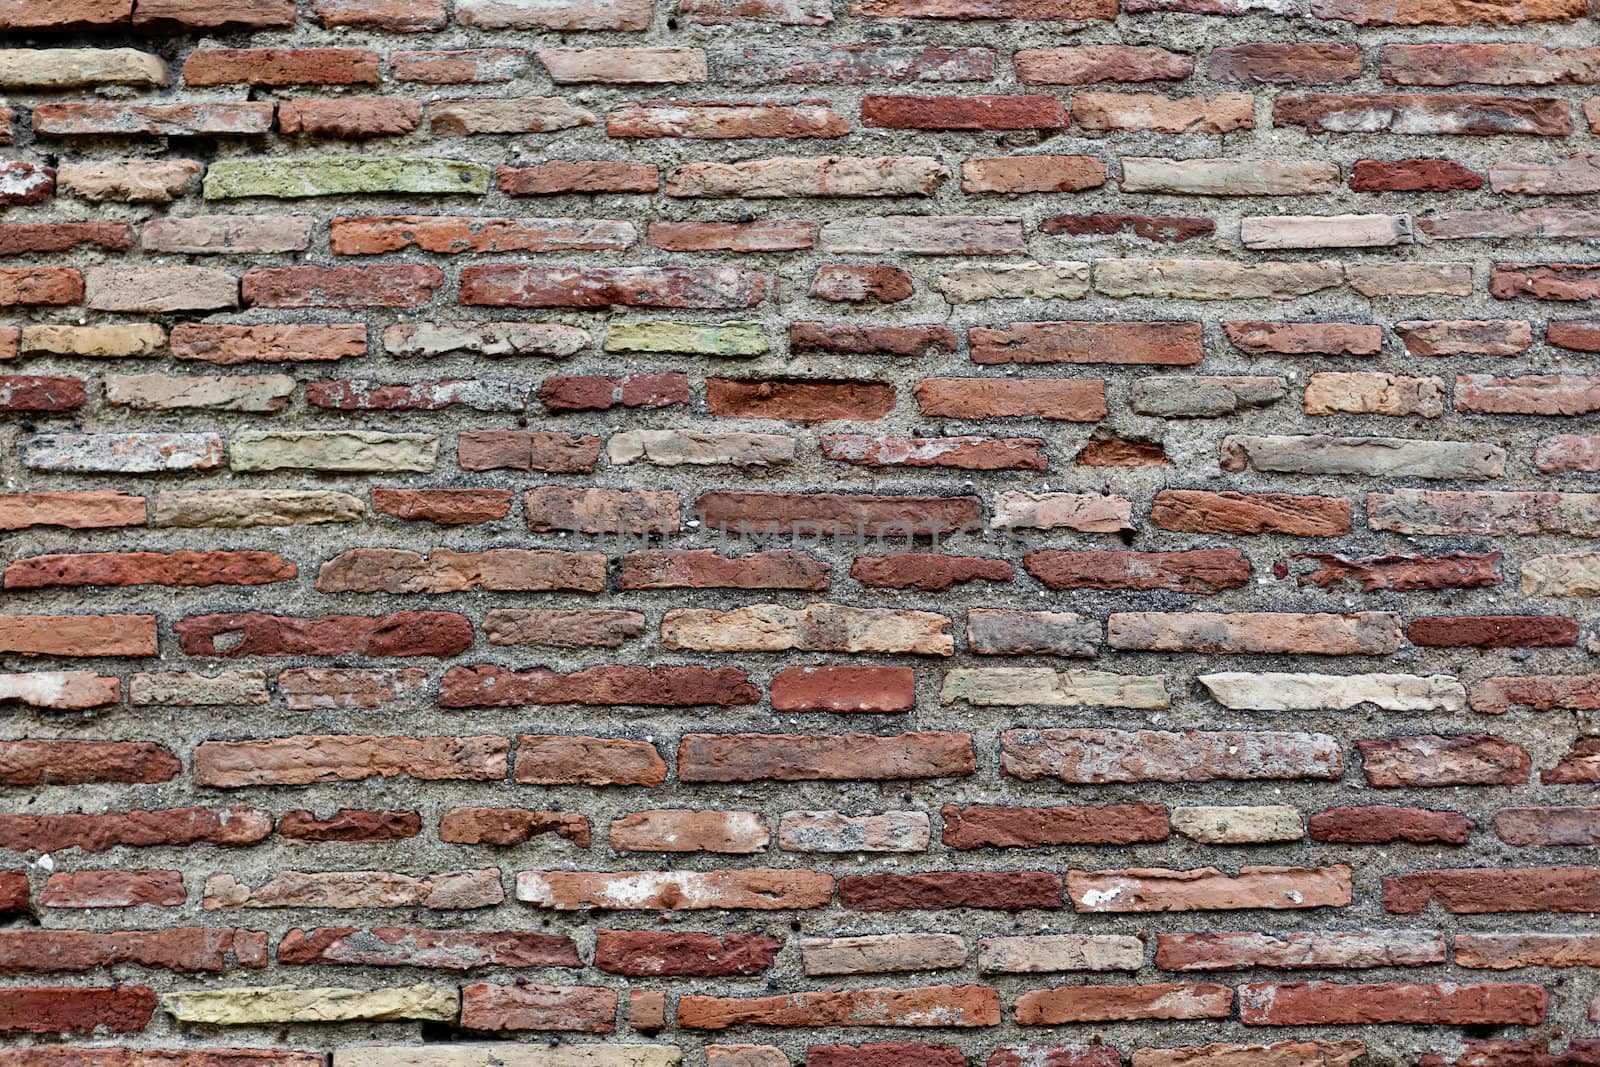 An ancient roman brick wall